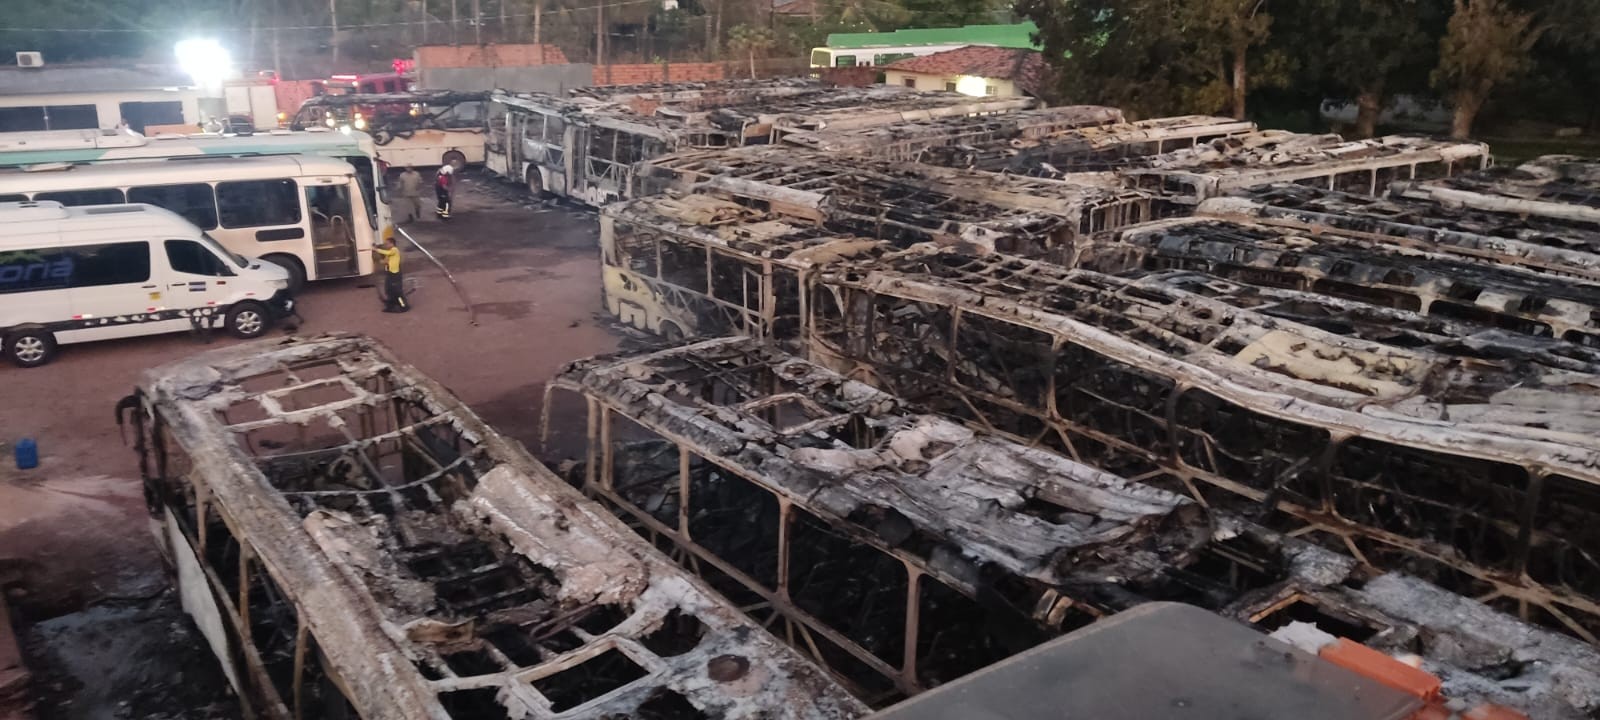 VÍDEO: incêndio atinge garagem de empresa de ônibus e destrói veículos no MA